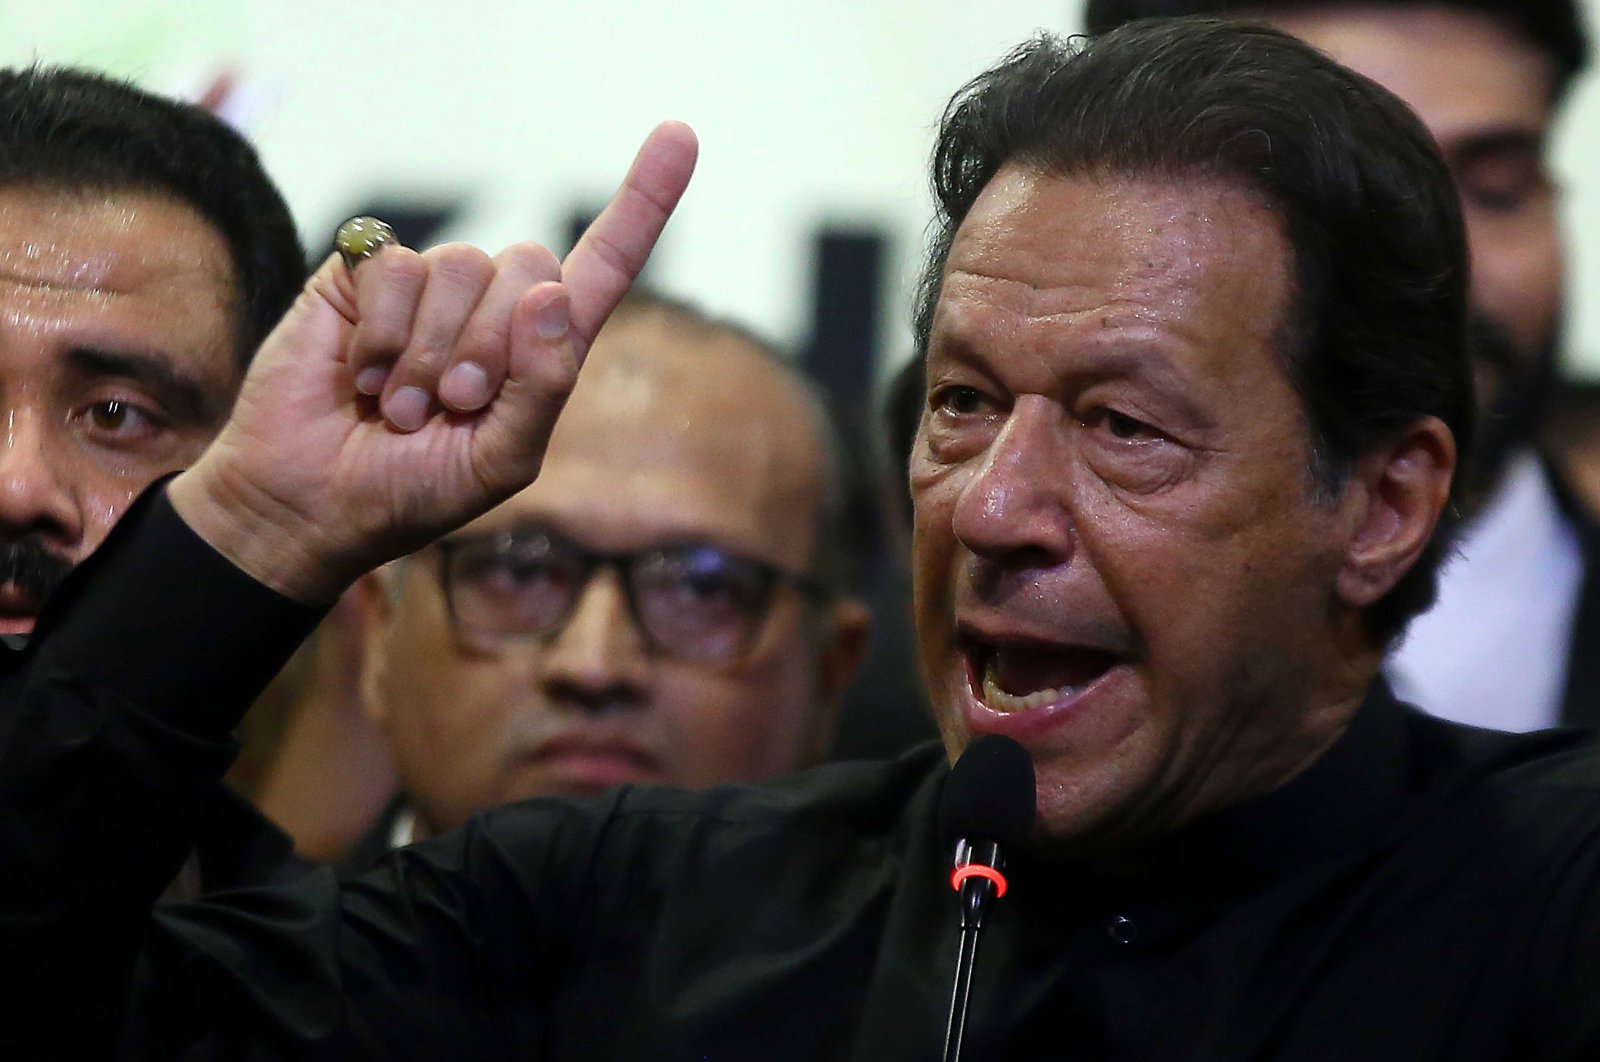 Mantan PM Pakistan Imran Khan mendapat larangan pemungutan suara 5 tahun dalam kasus korupsi